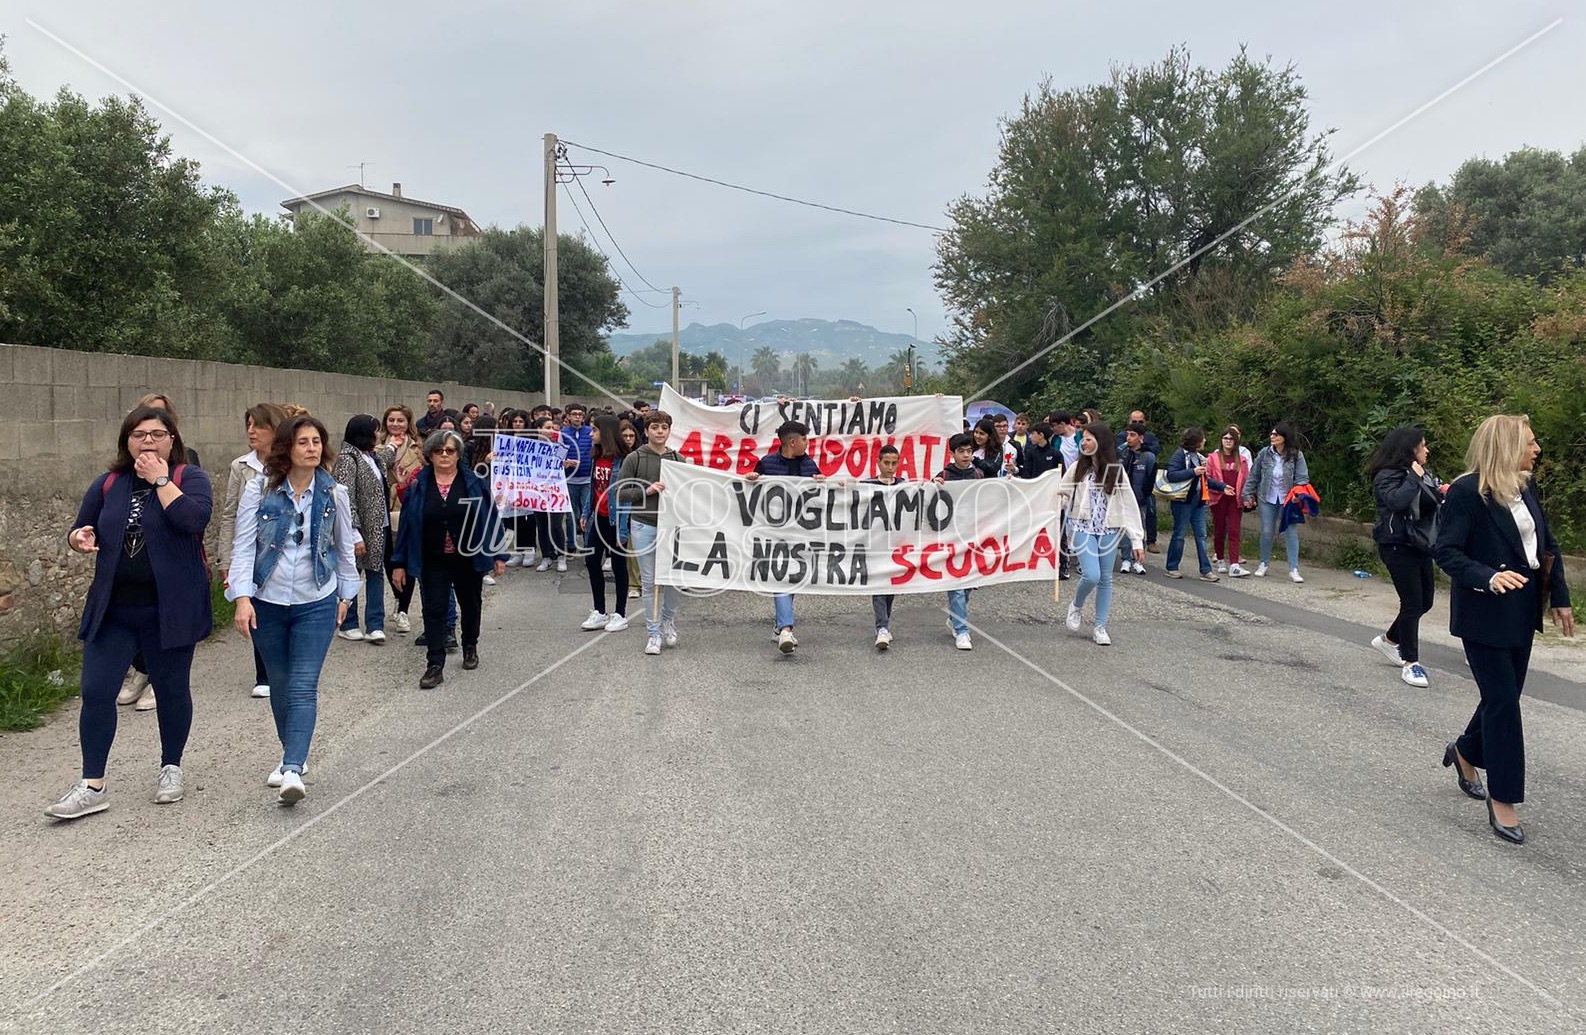 <strong>Siderno, oltre 200 bambini senza una scuola: esplode la protesta di genitori e insegnanti</strong>